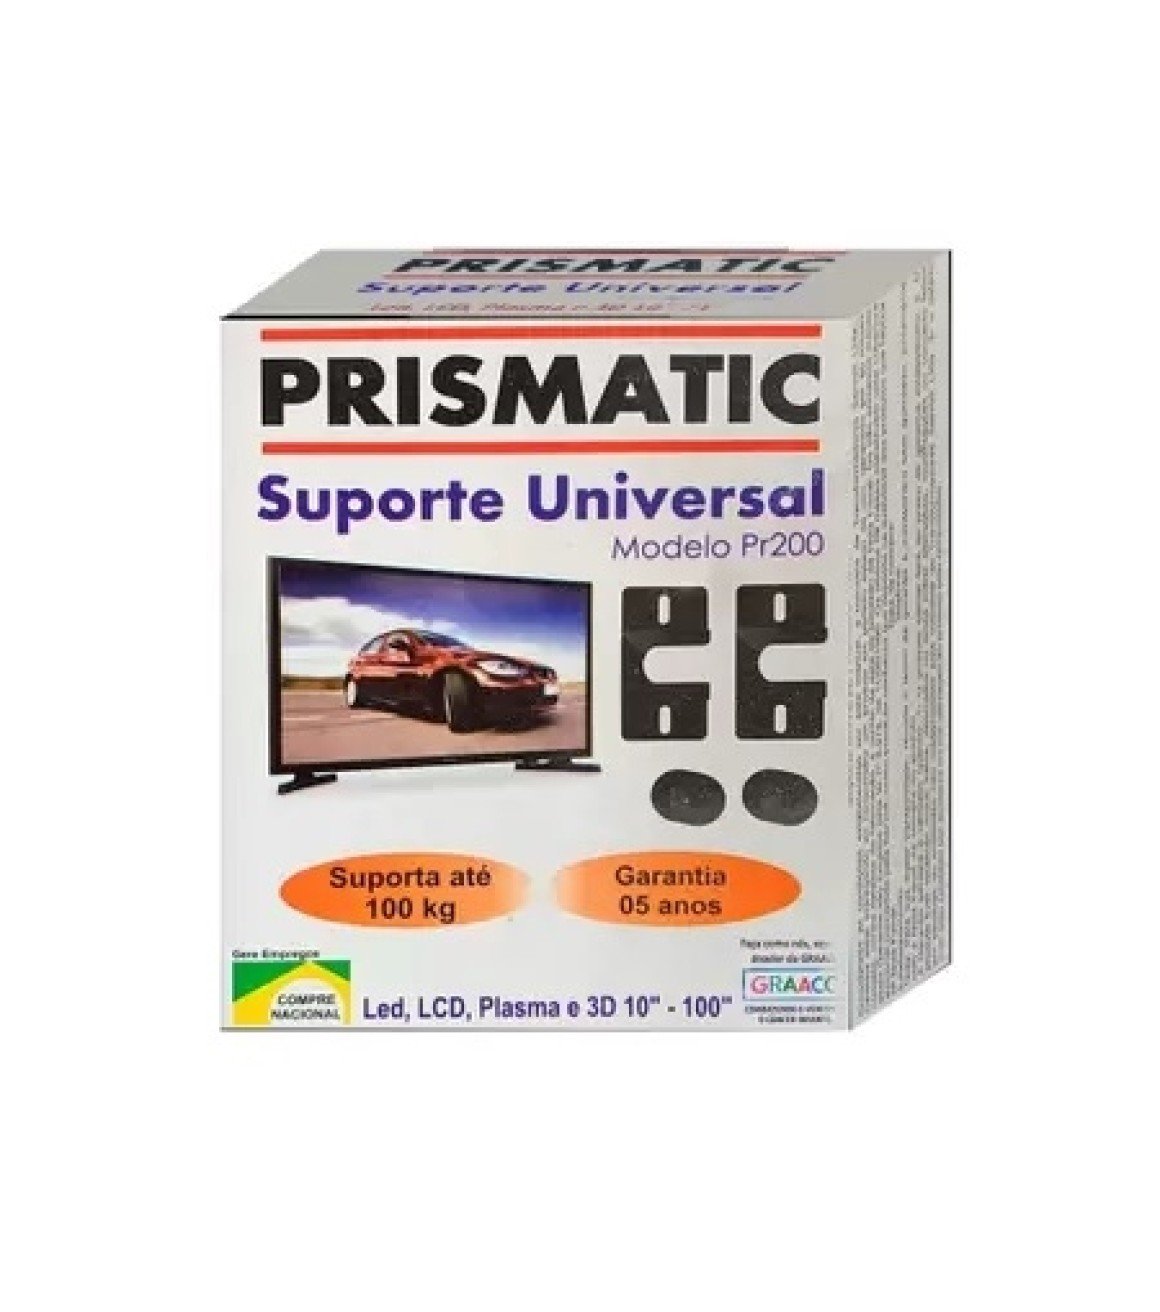 Suporte de Metal para Tv Universal Modelo Pr200 Prismatic para Atpe 100kg Preto - 3